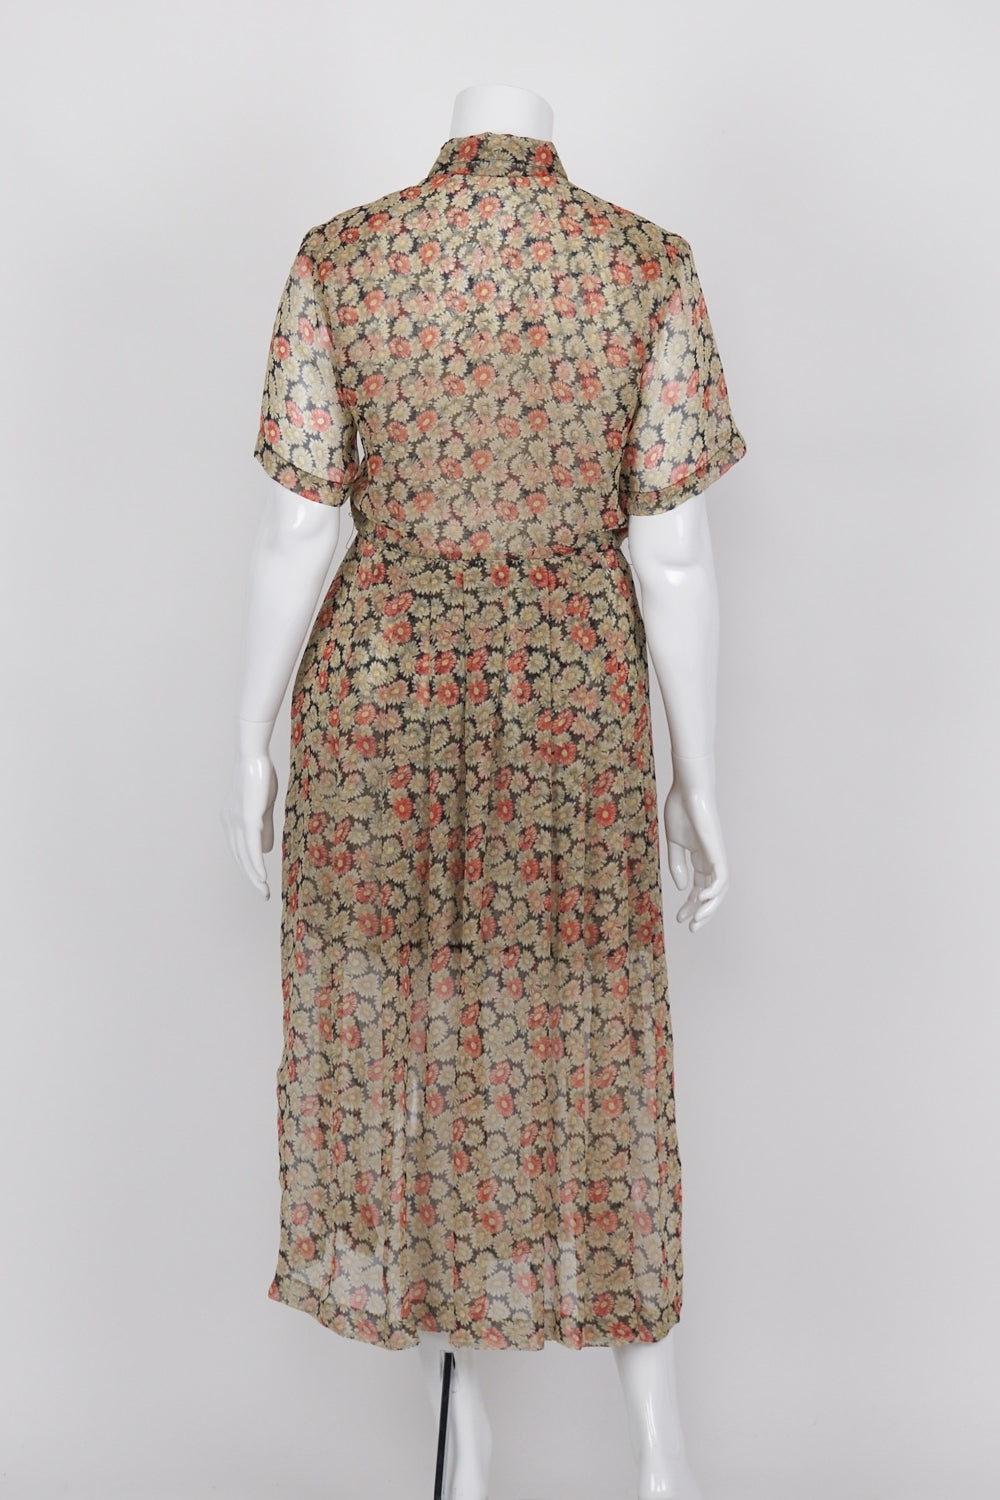 Lisa Ho Vintage Floral Sheer Maxi Dress 14